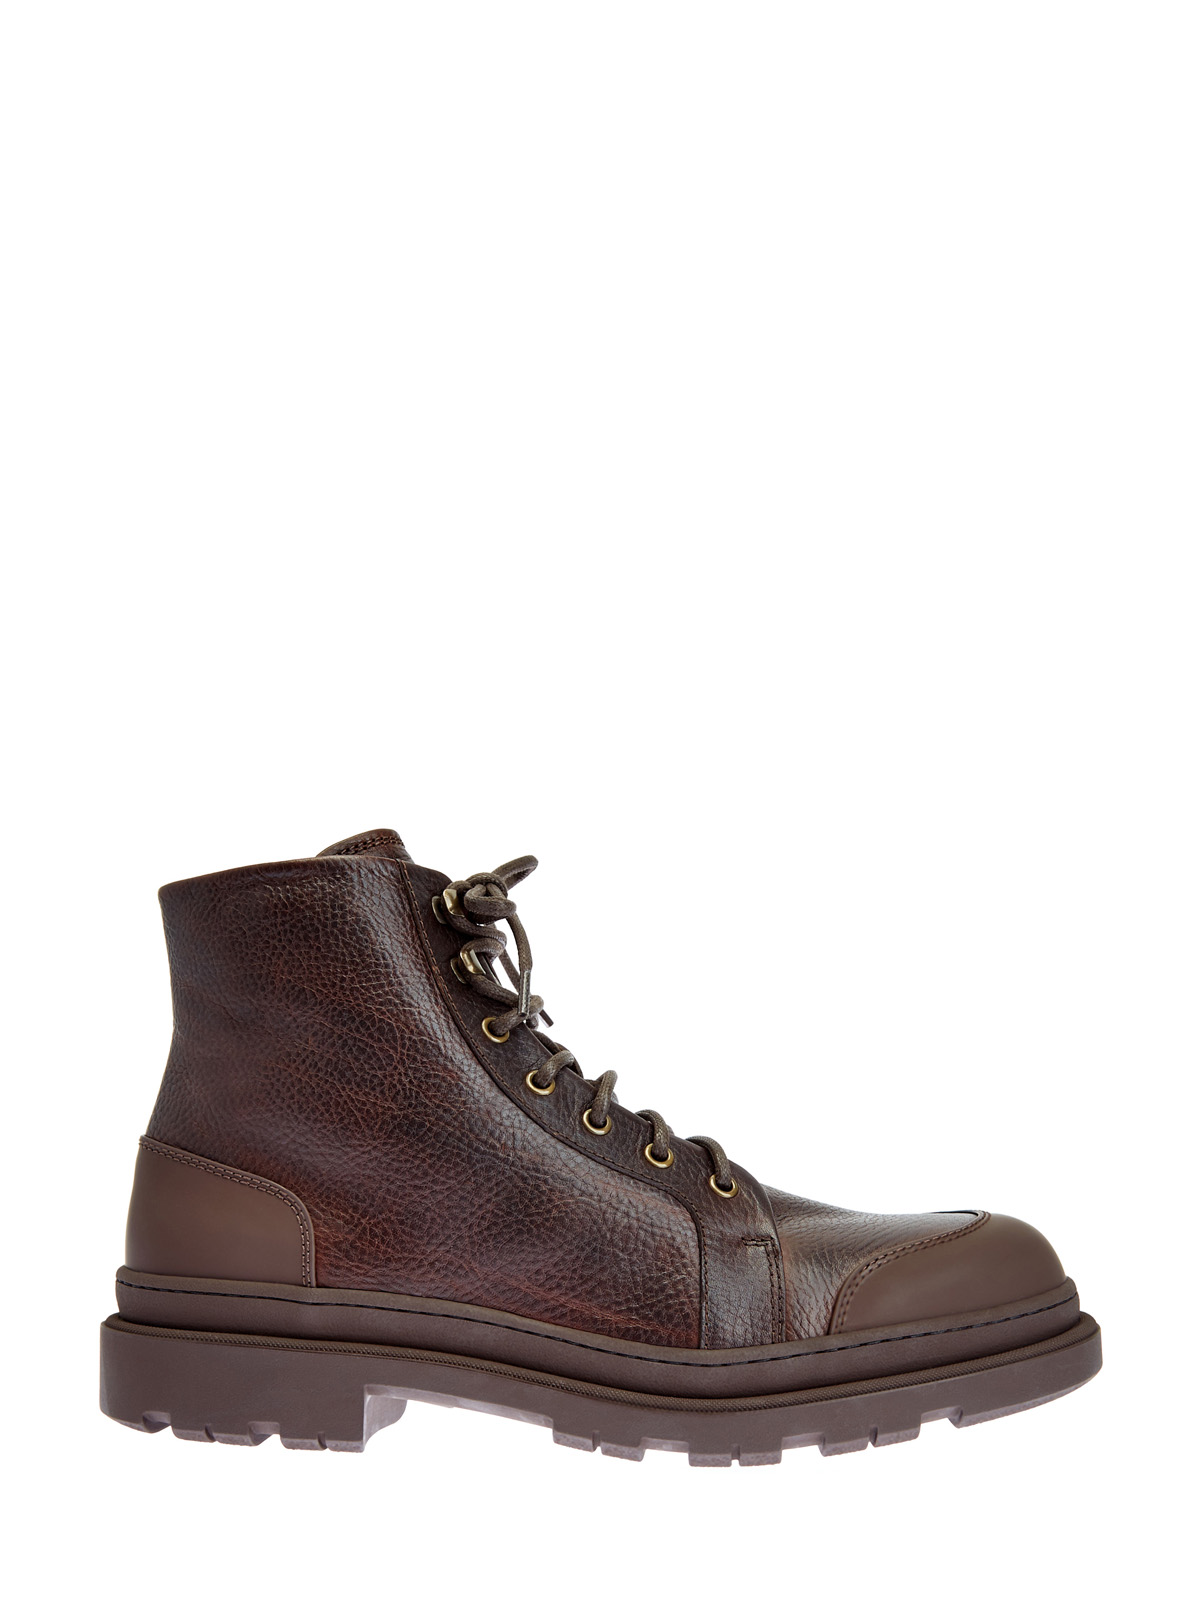 Высокие кожаные ботинки с отделкой из шерсти мериноса BRUNELLO CUCINELLI, цвет коричневый, размер 42;42.5;44